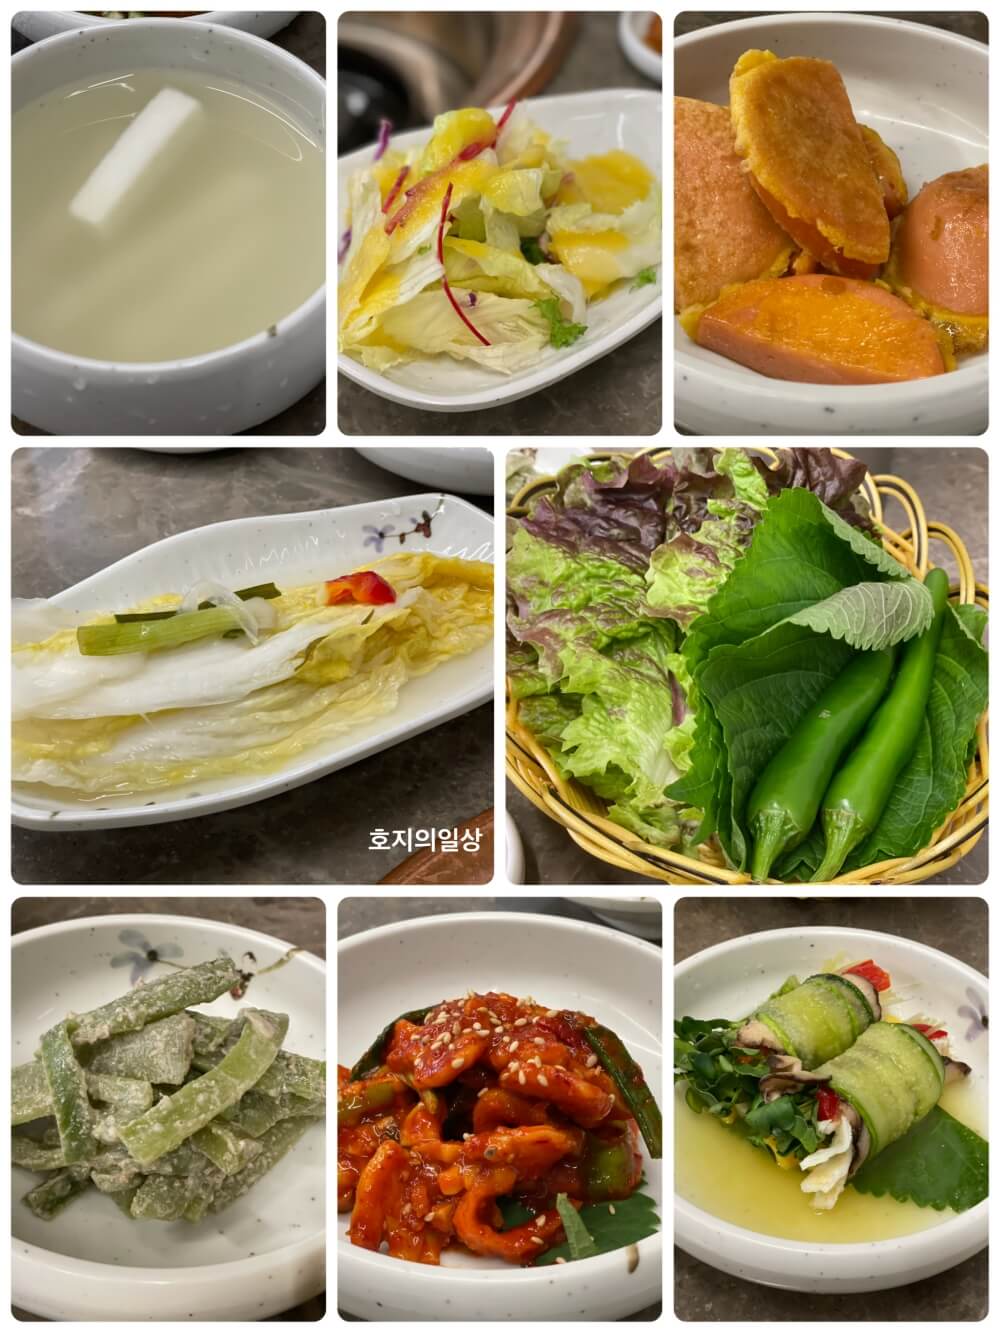 서울 강남 역삼 양념갈비 맛집 유미식당 - 깔끔한 반찬